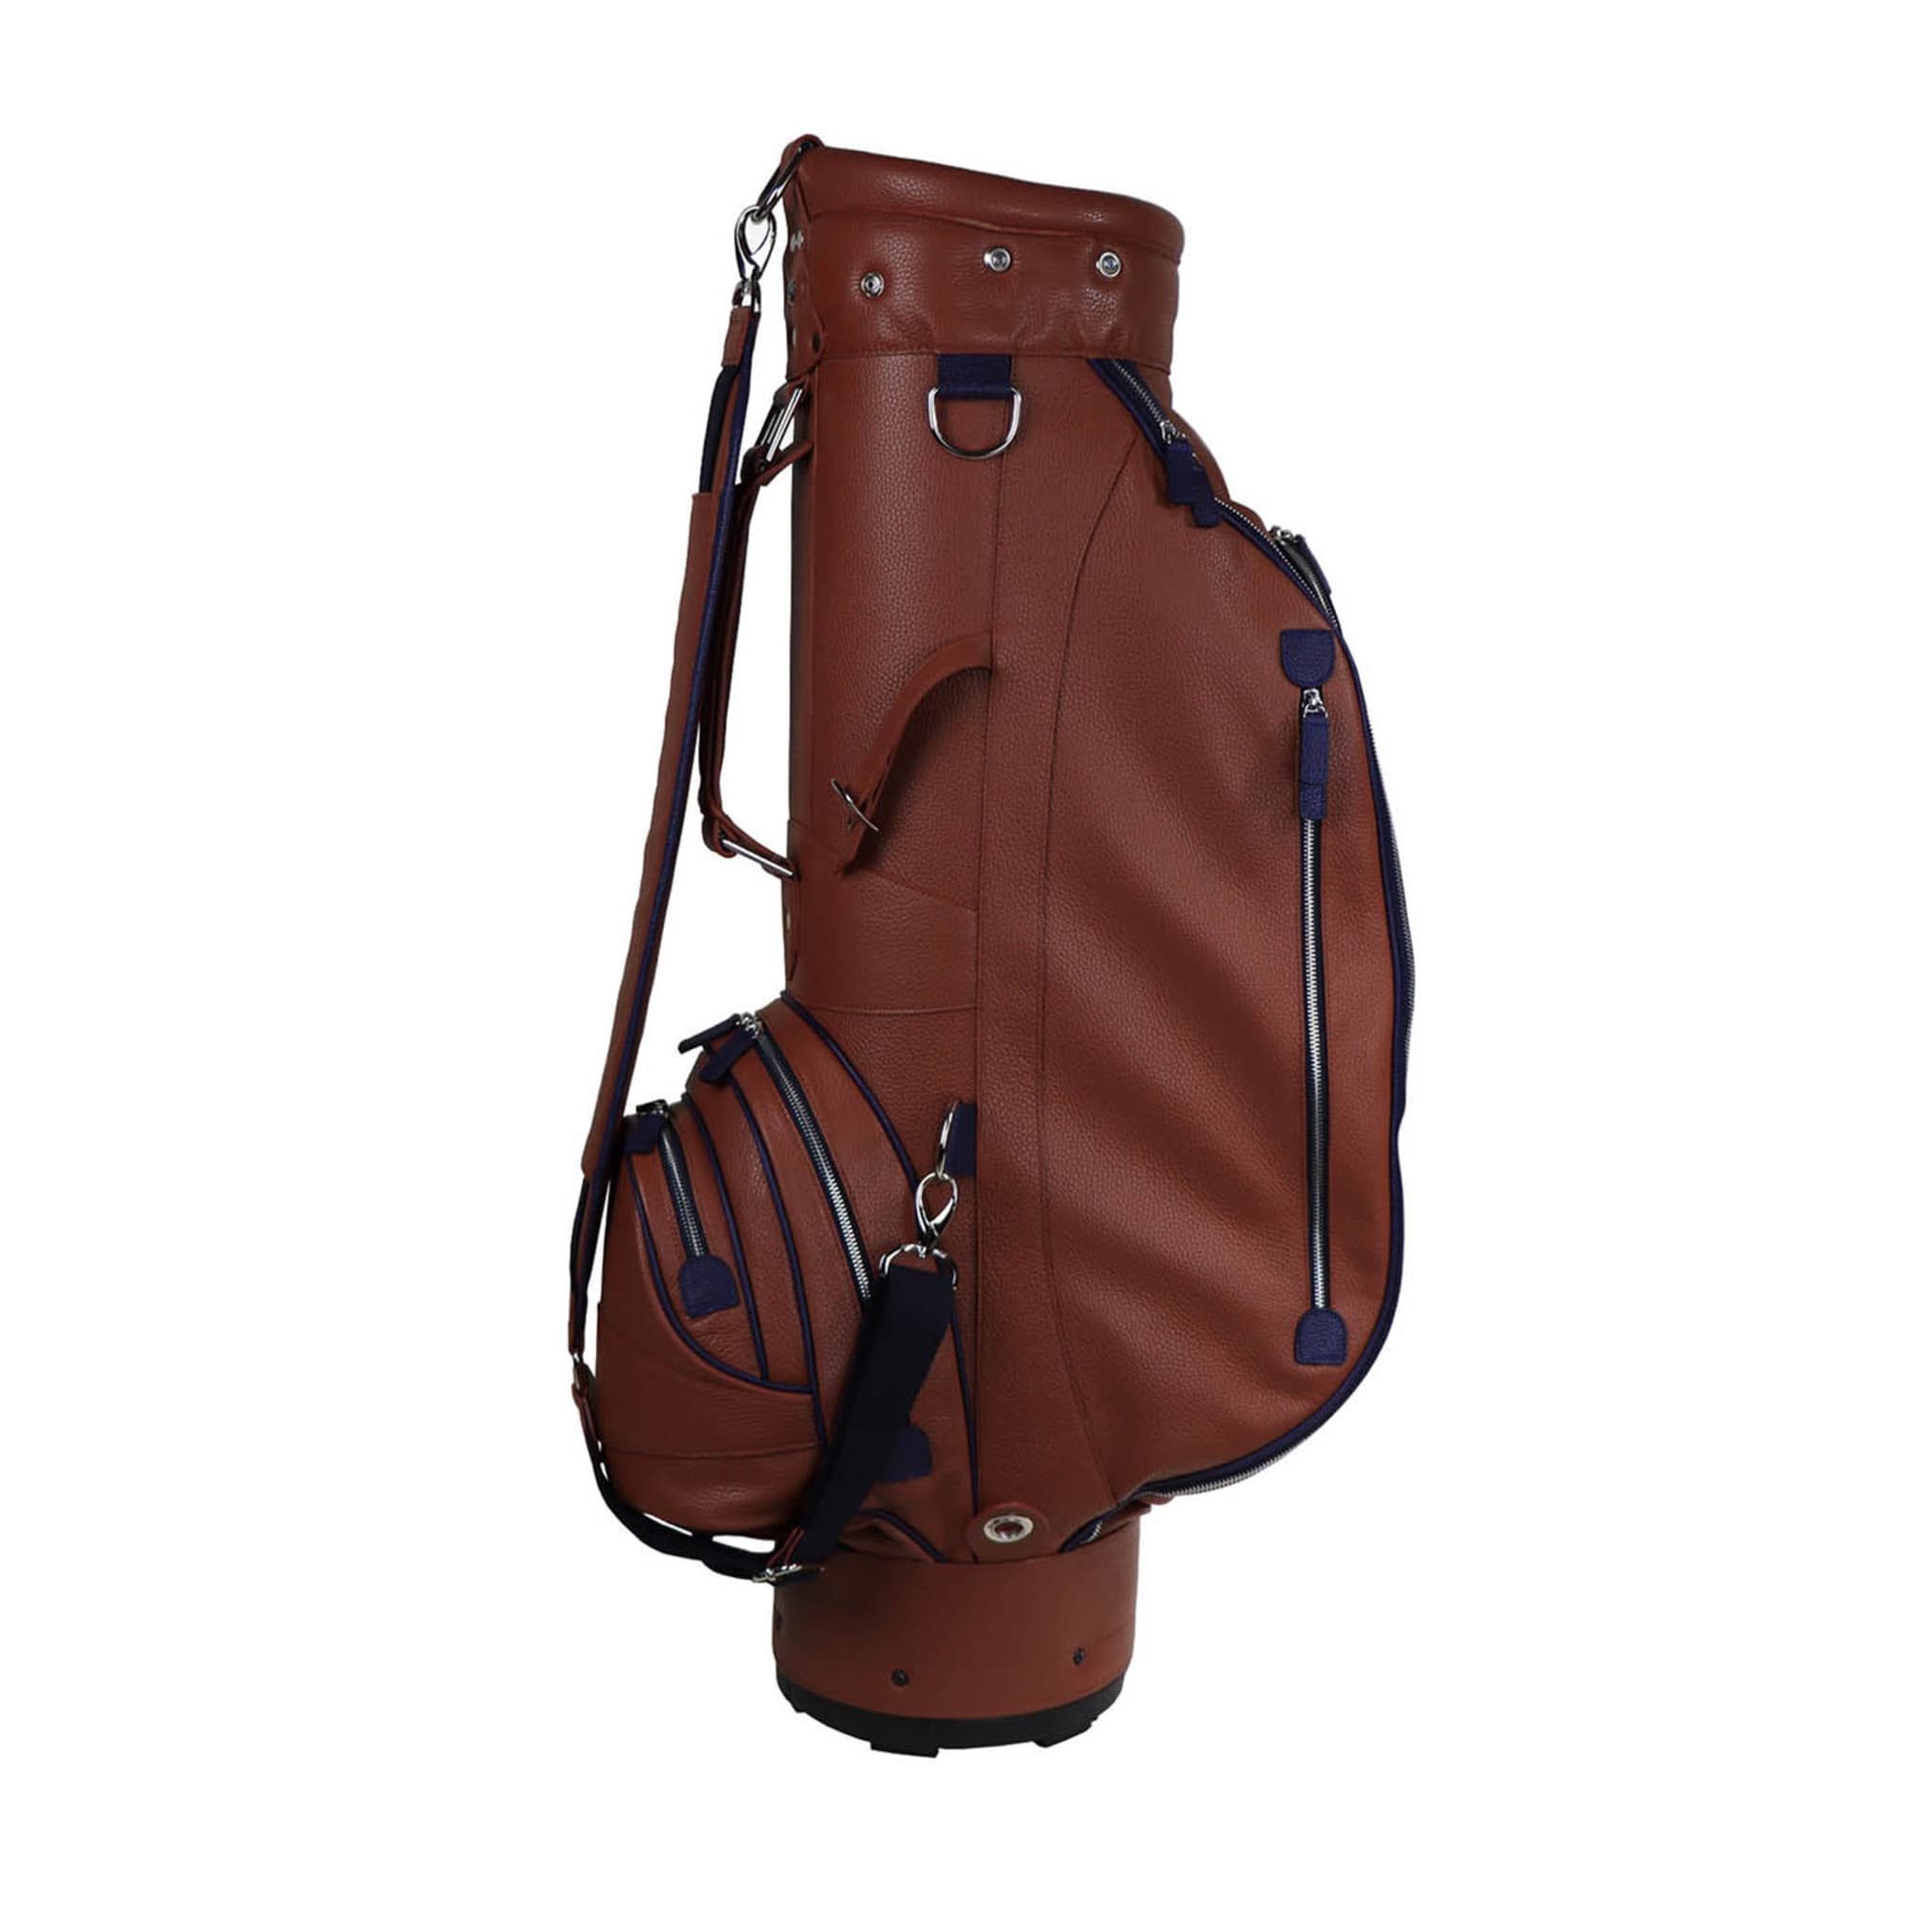 Bolsa de golf Imperiale de piel marrón y azul - Vista principal